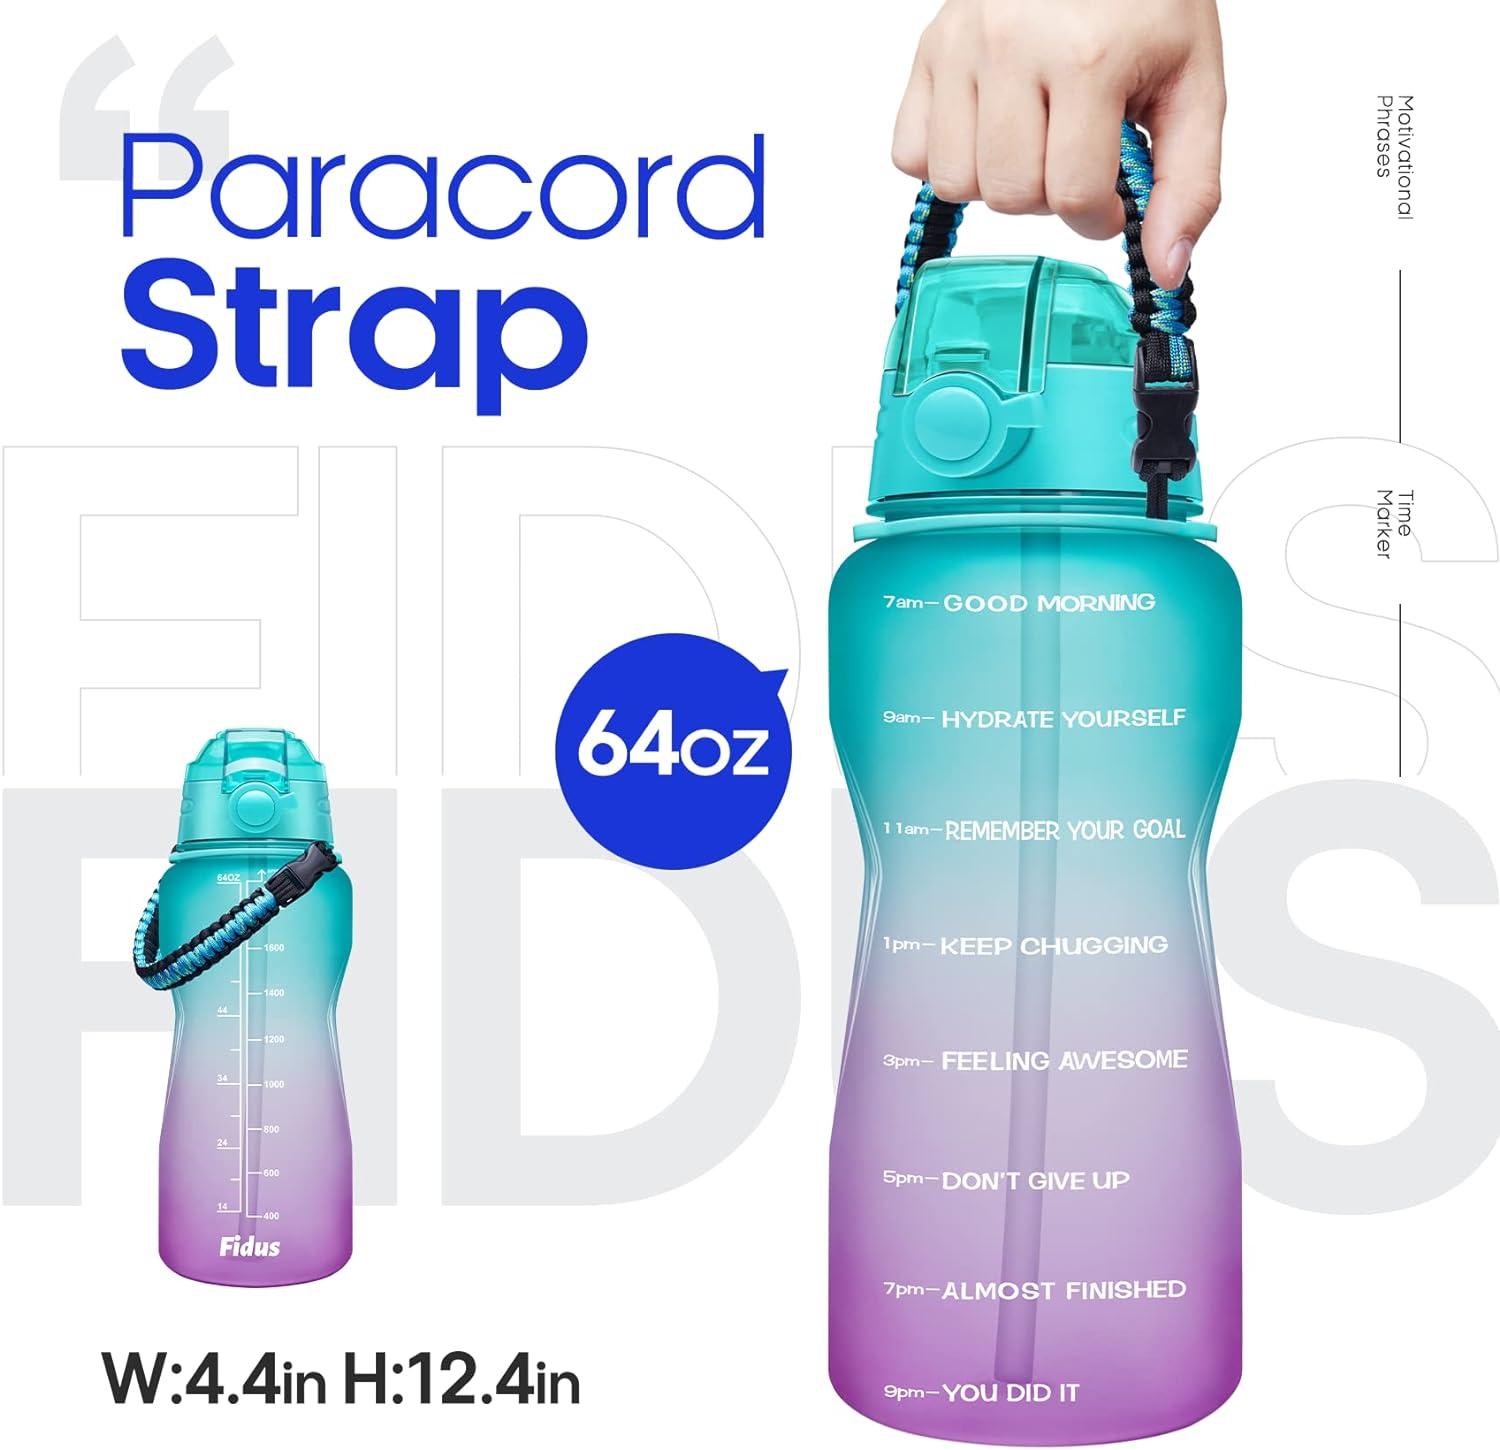 Fidus 32oz Leakproof Tritran BPA Free Water Bottle with